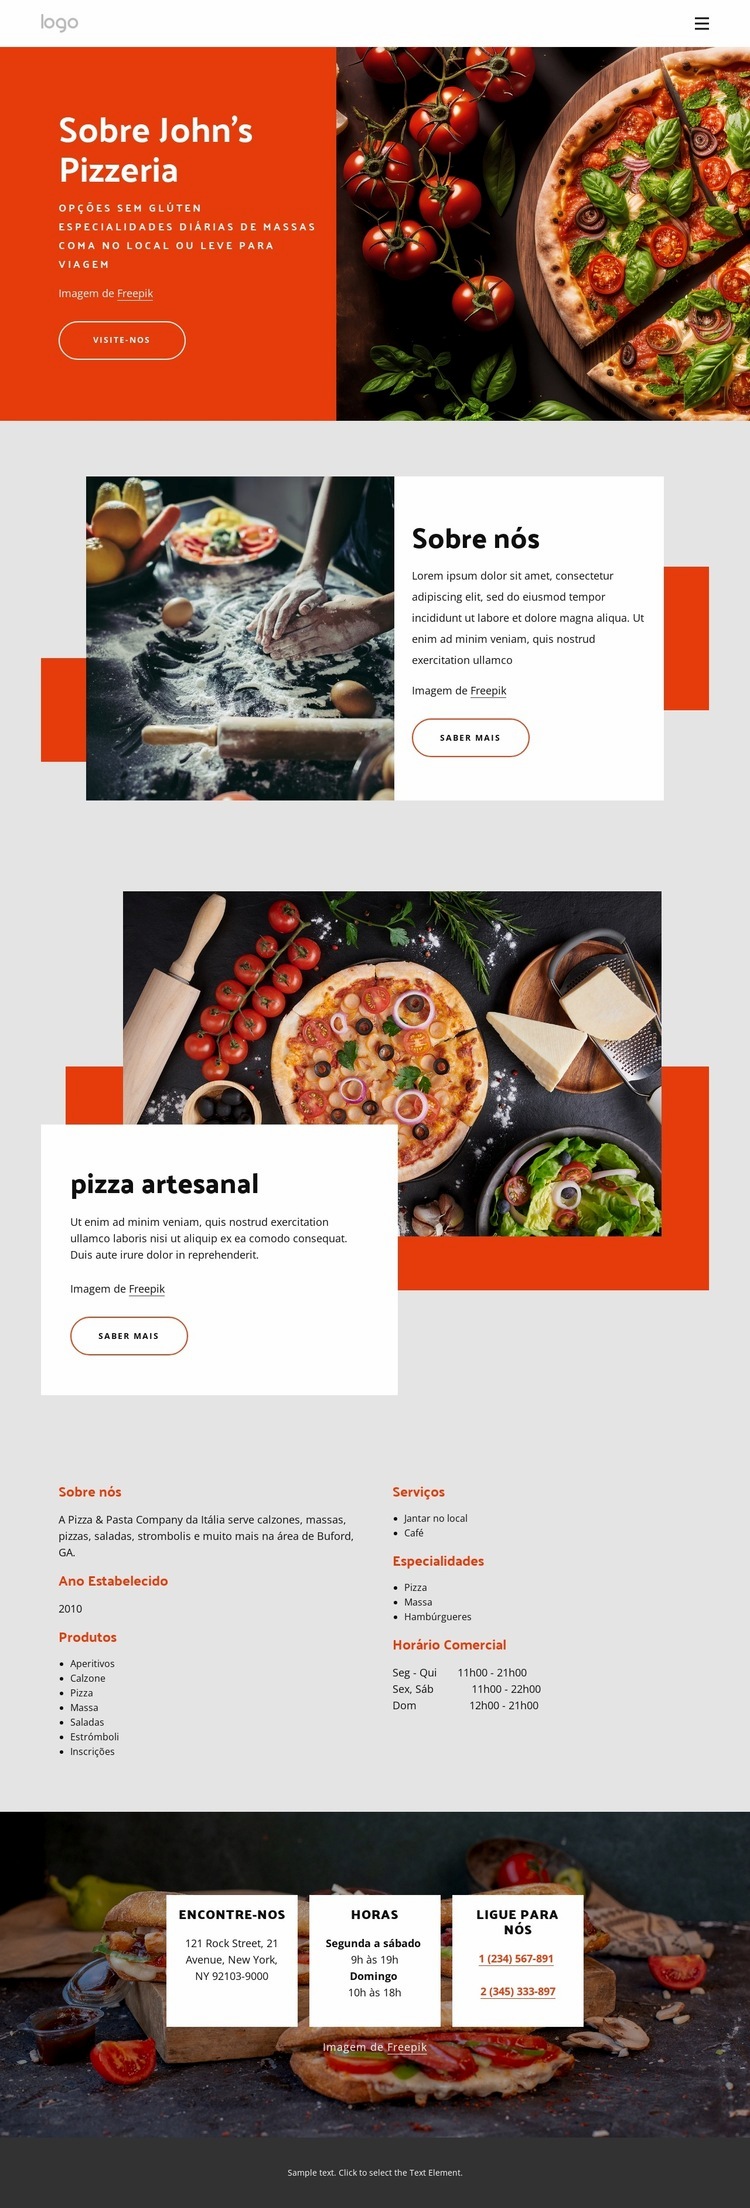 Sobre nossa pizzaria Design do site